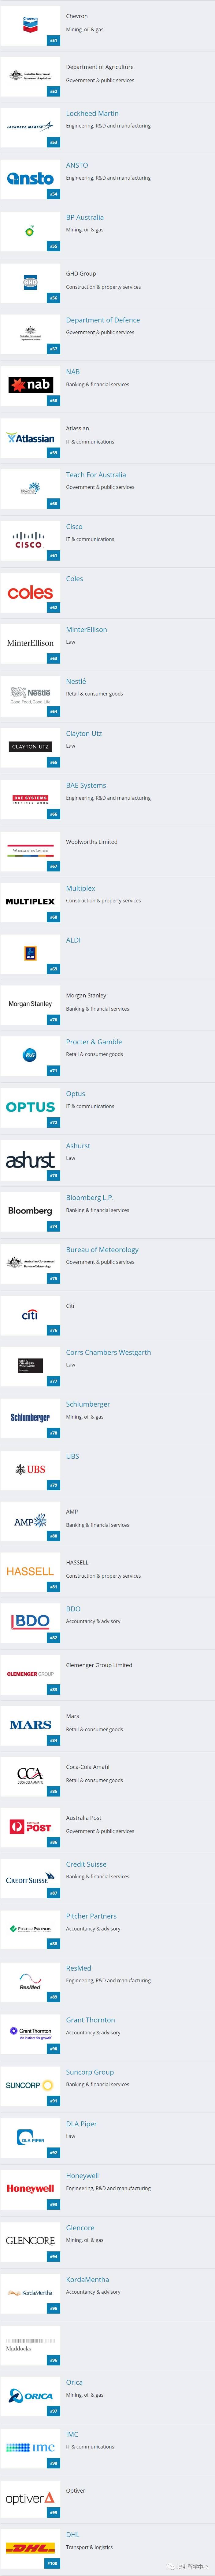 澳洲哪些公司最受毕业生欢迎呢？谷歌第一当之无愧